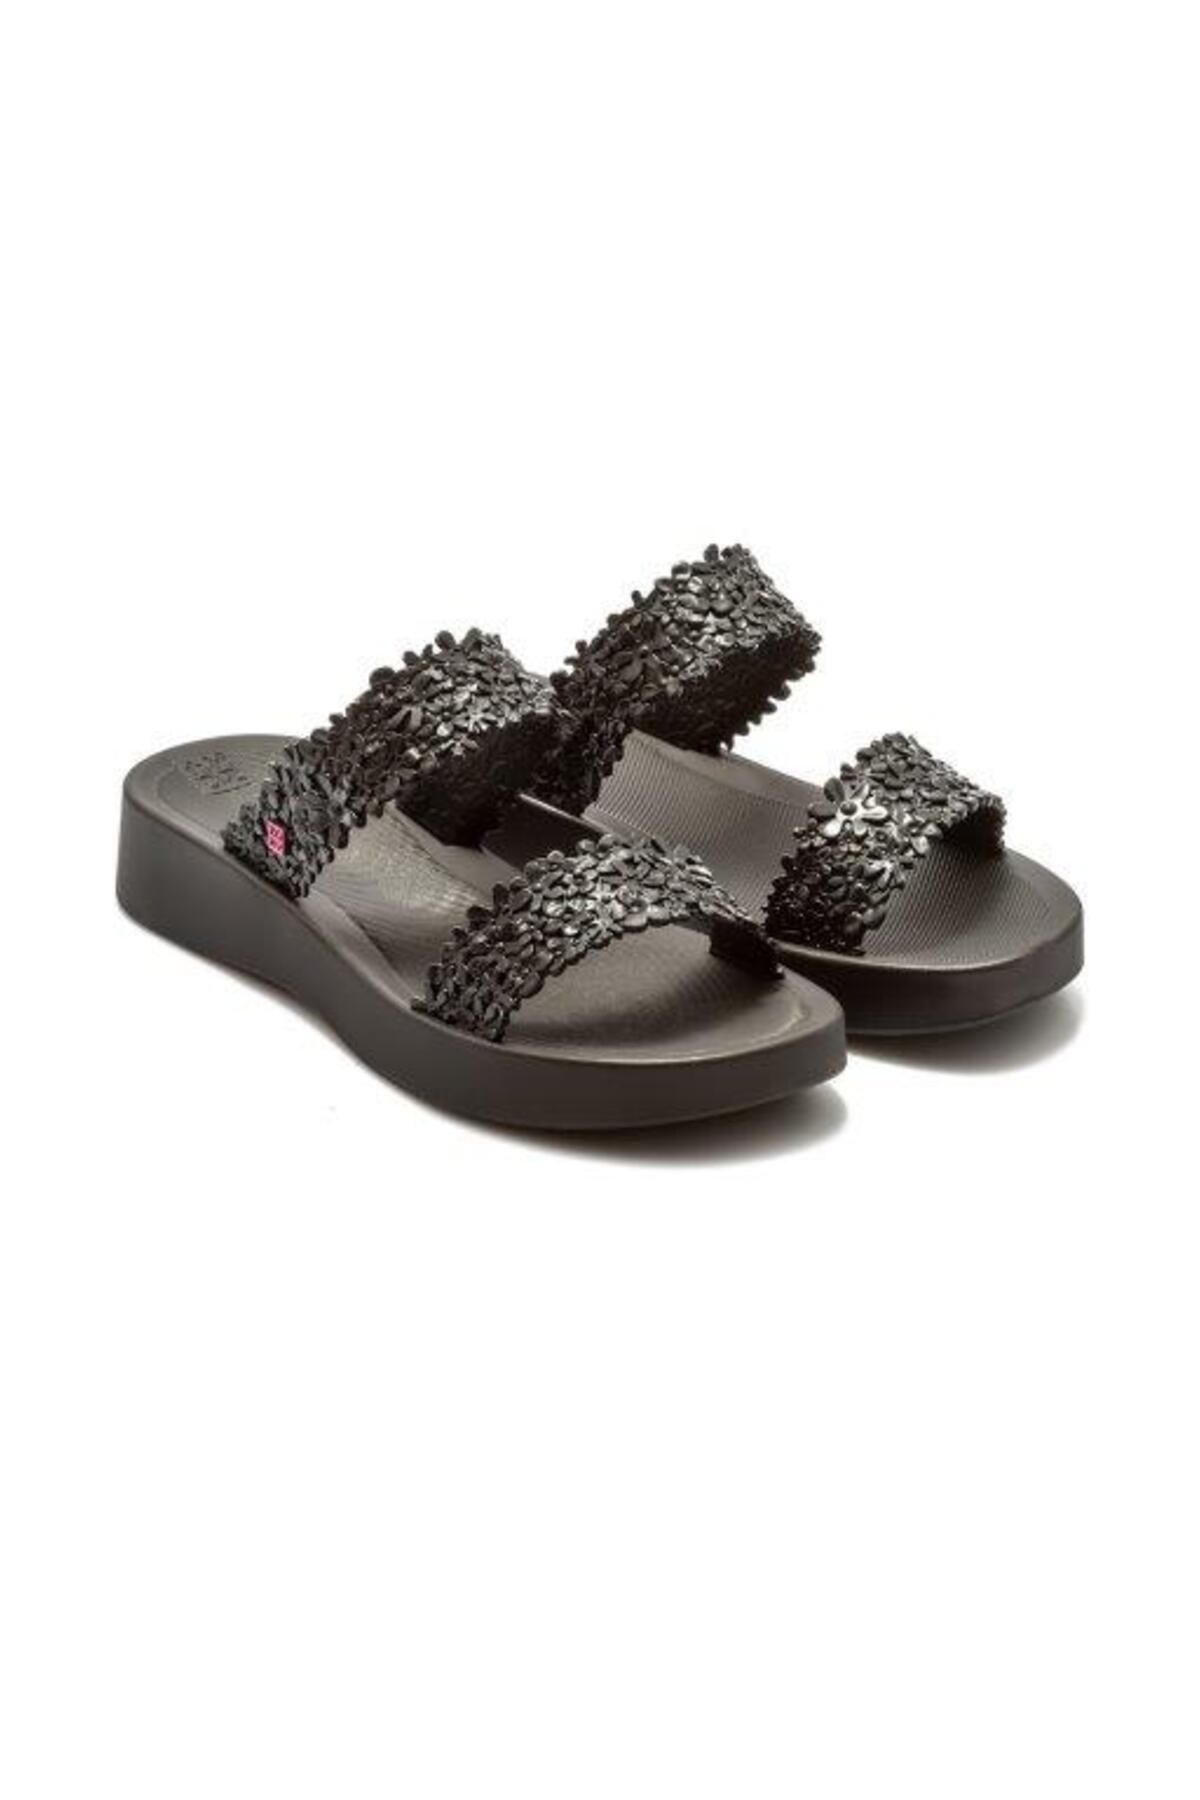 ZAXY Primavera Slide Kadın Sandalet Siyah 35/40